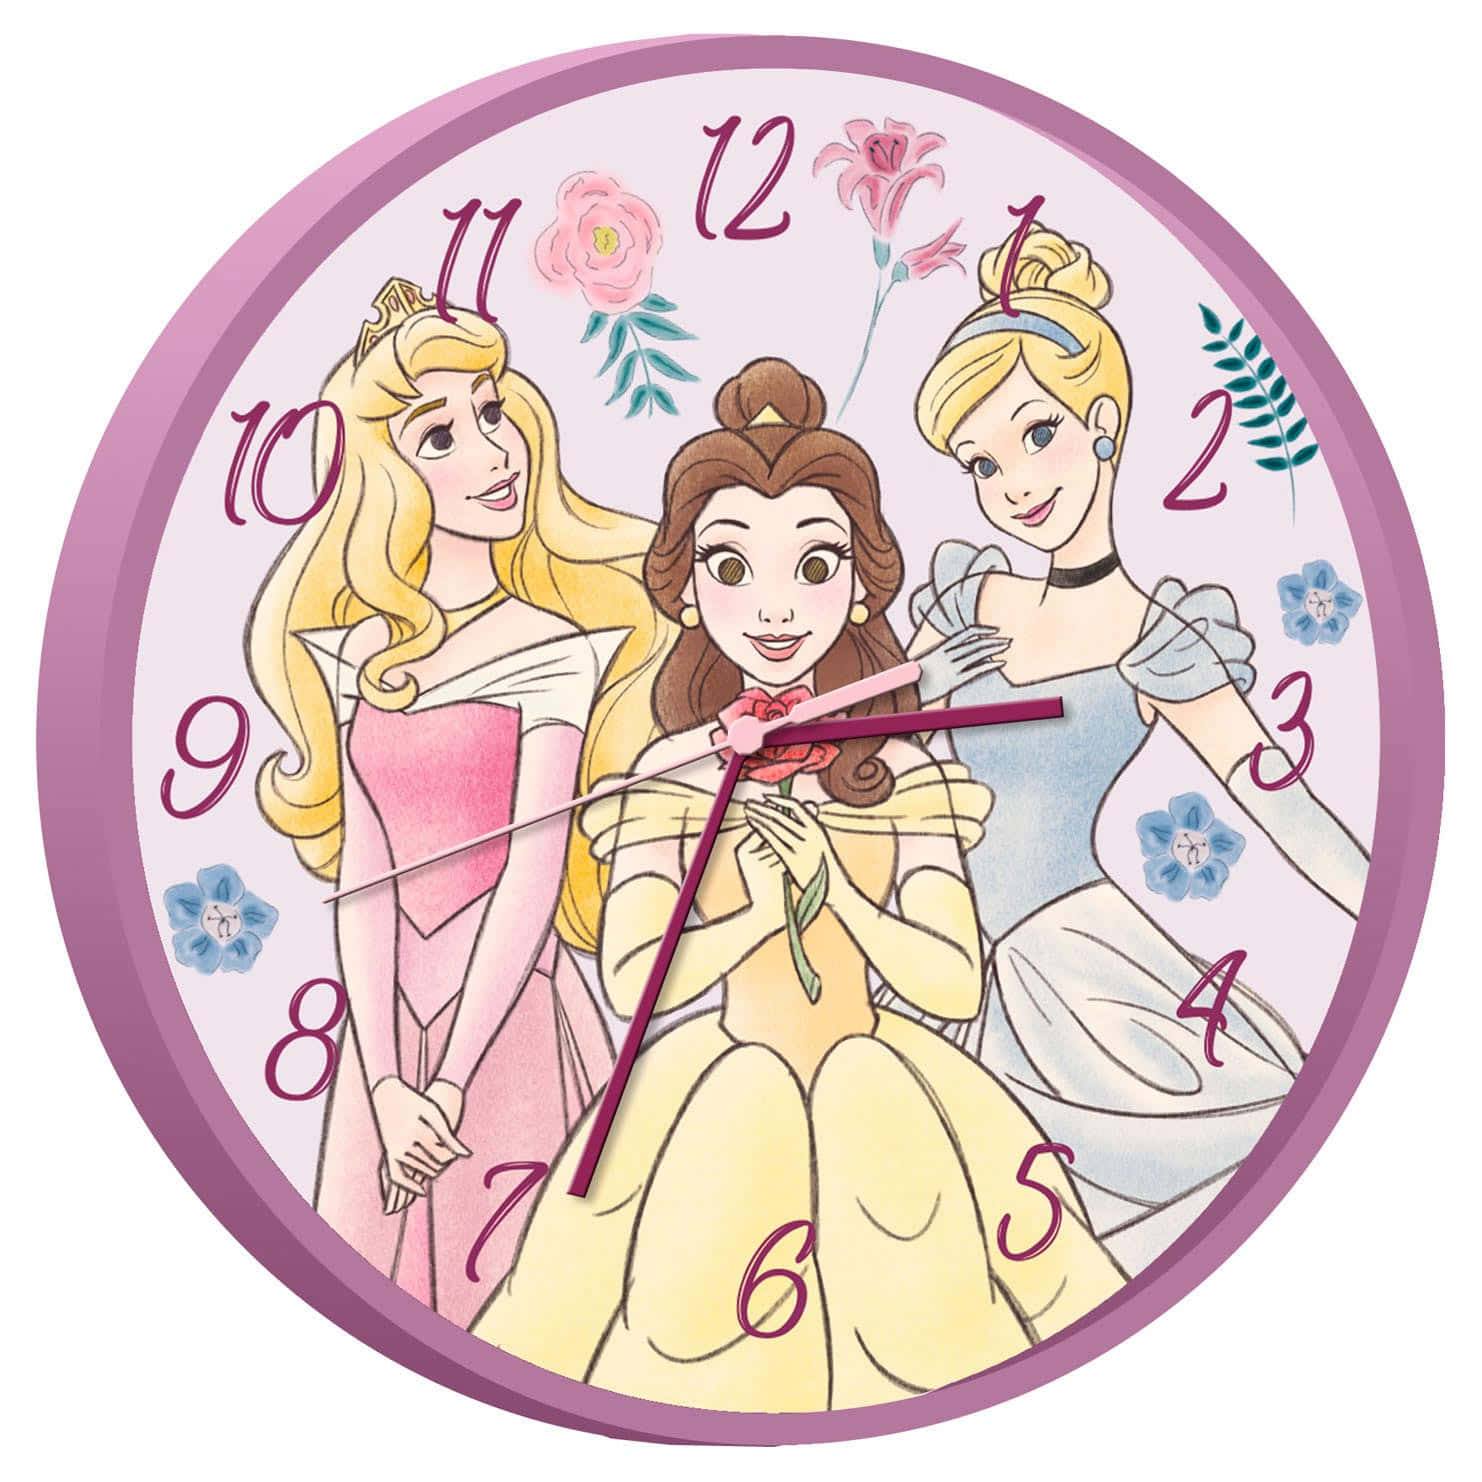 Fejrmagien Af Disney-prinsesserne.